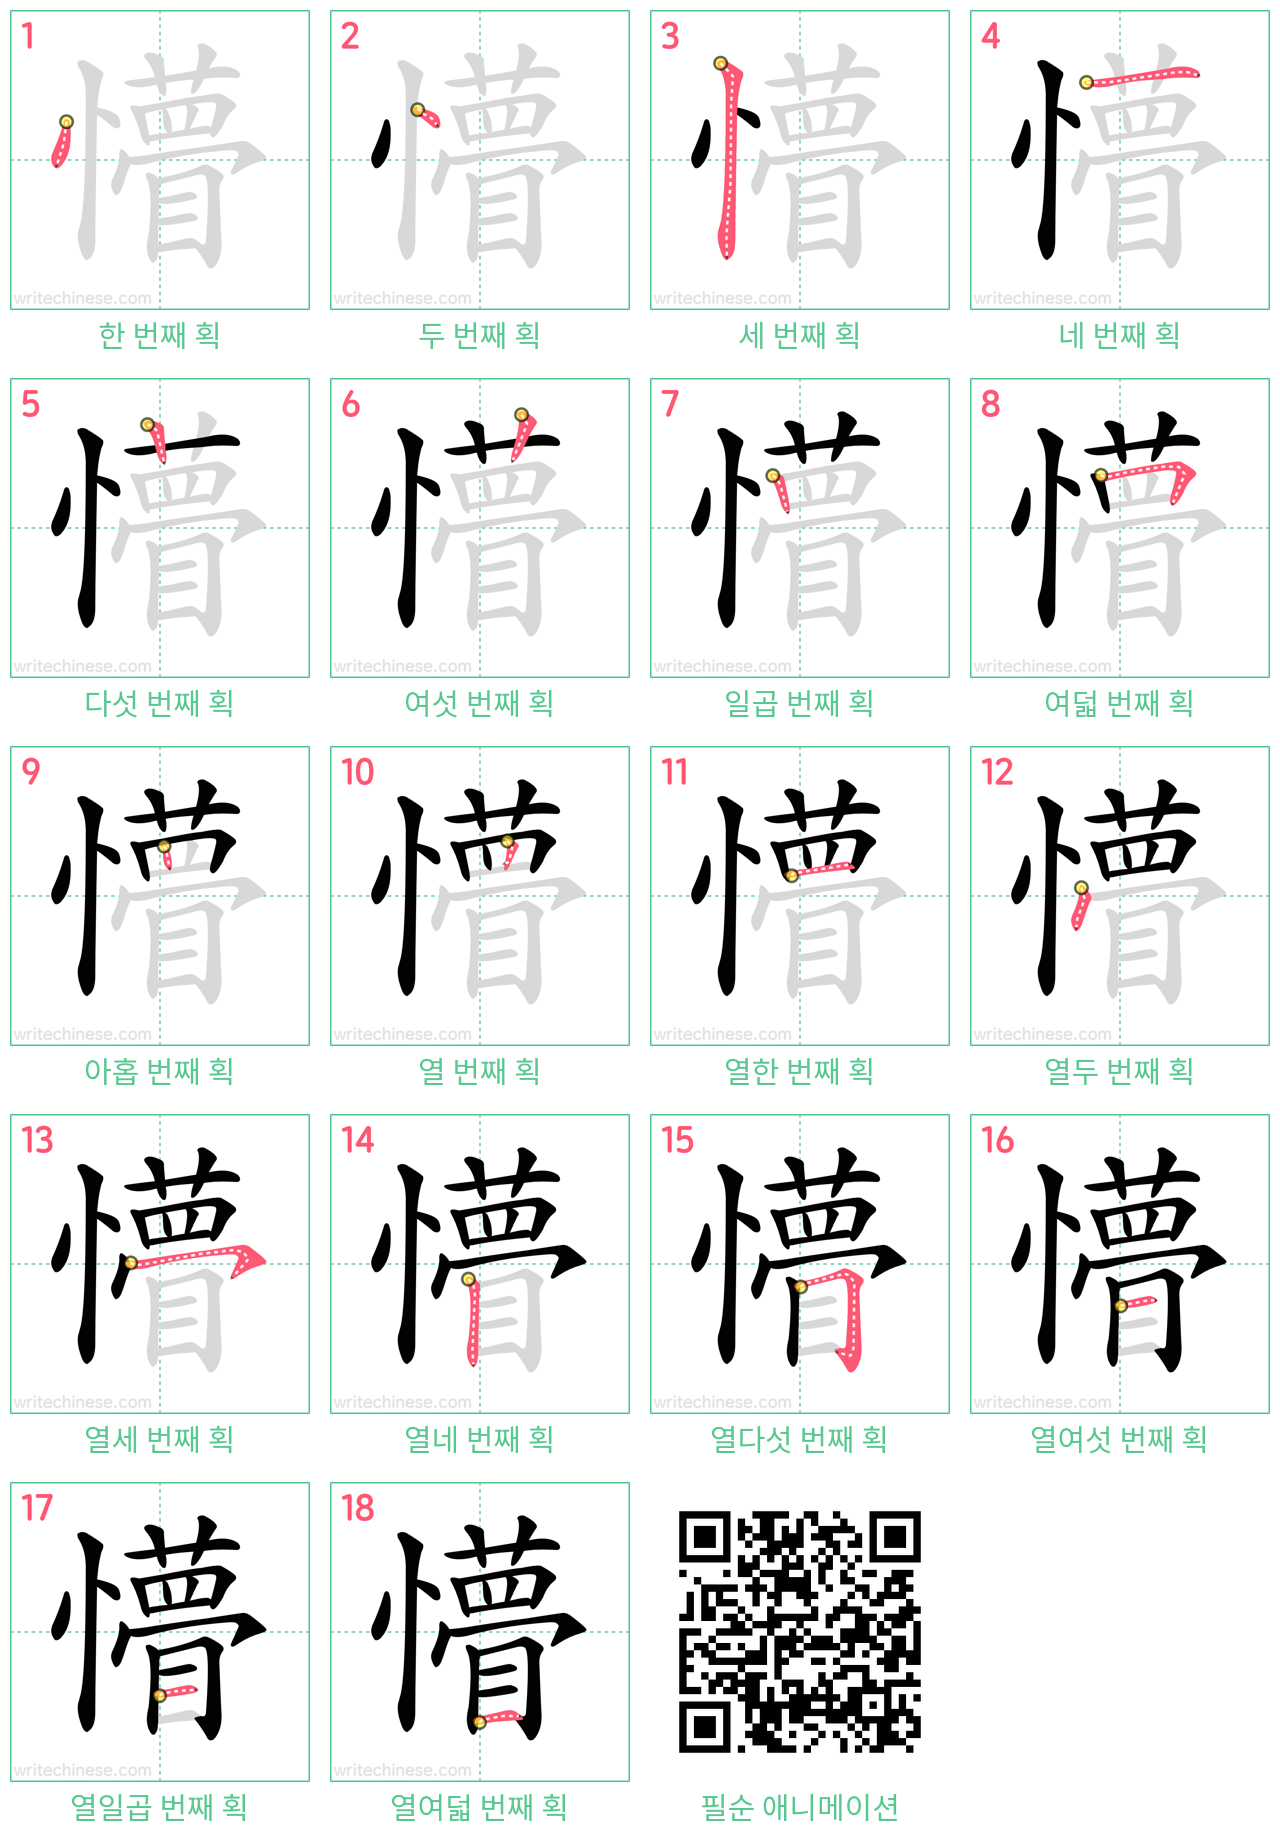 懵 step-by-step stroke order diagrams